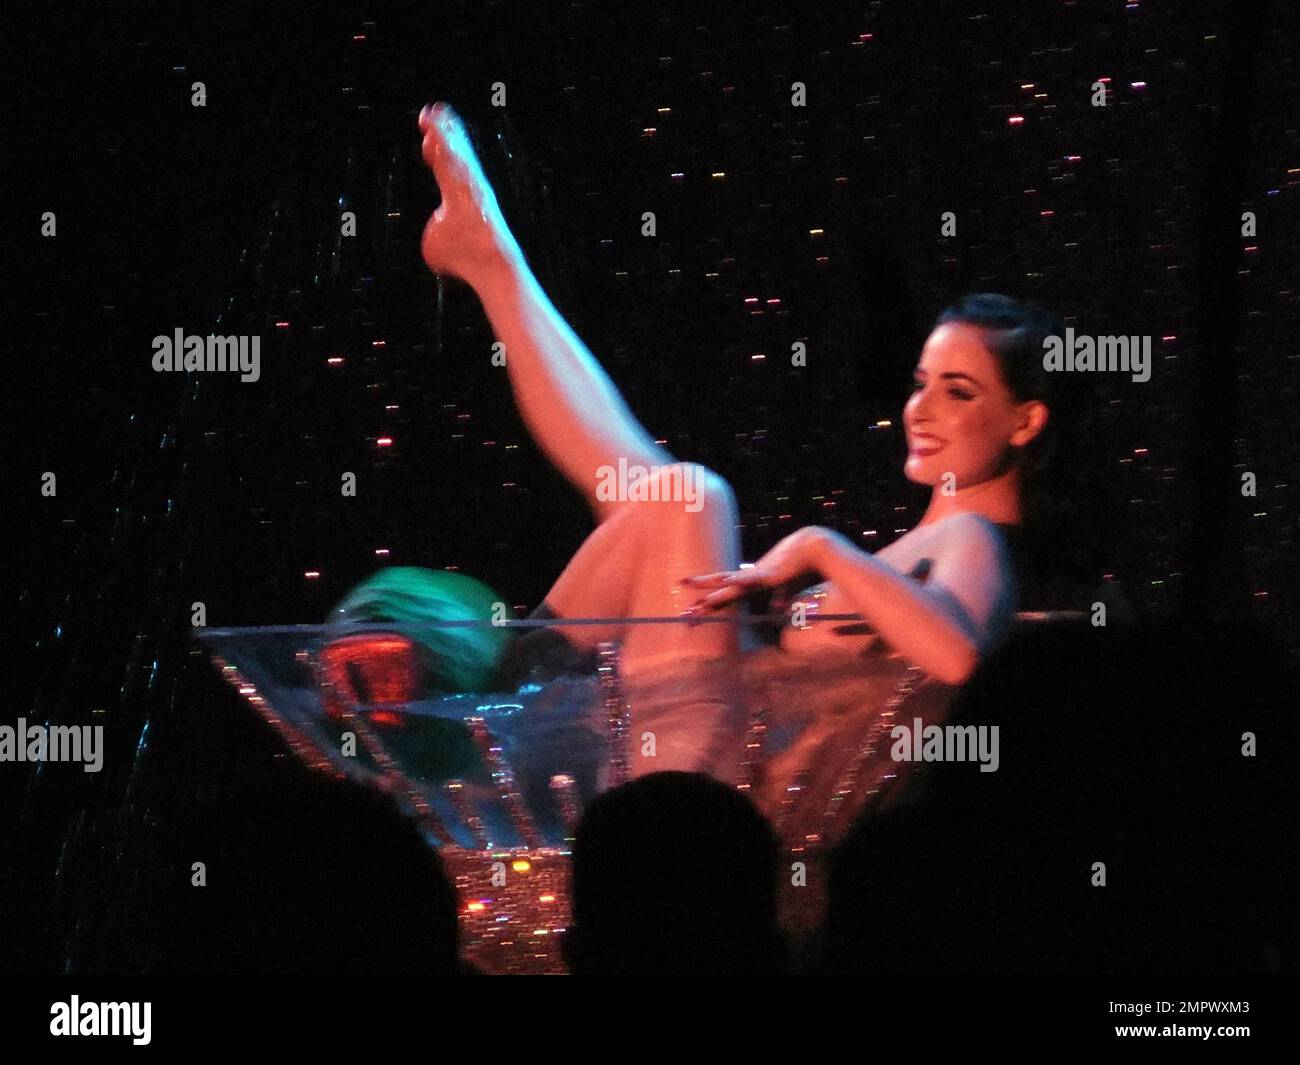 EXKLUSIV!! Dita von Teese, Königin von Burlesque, führt ihre Martini-Glas-Nummer  im Rahmen ihrer Strip-Hooray-Liveshow im Roxy auf. Los Angeles, CA  5/17/2011 Stockfotografie - Alamy